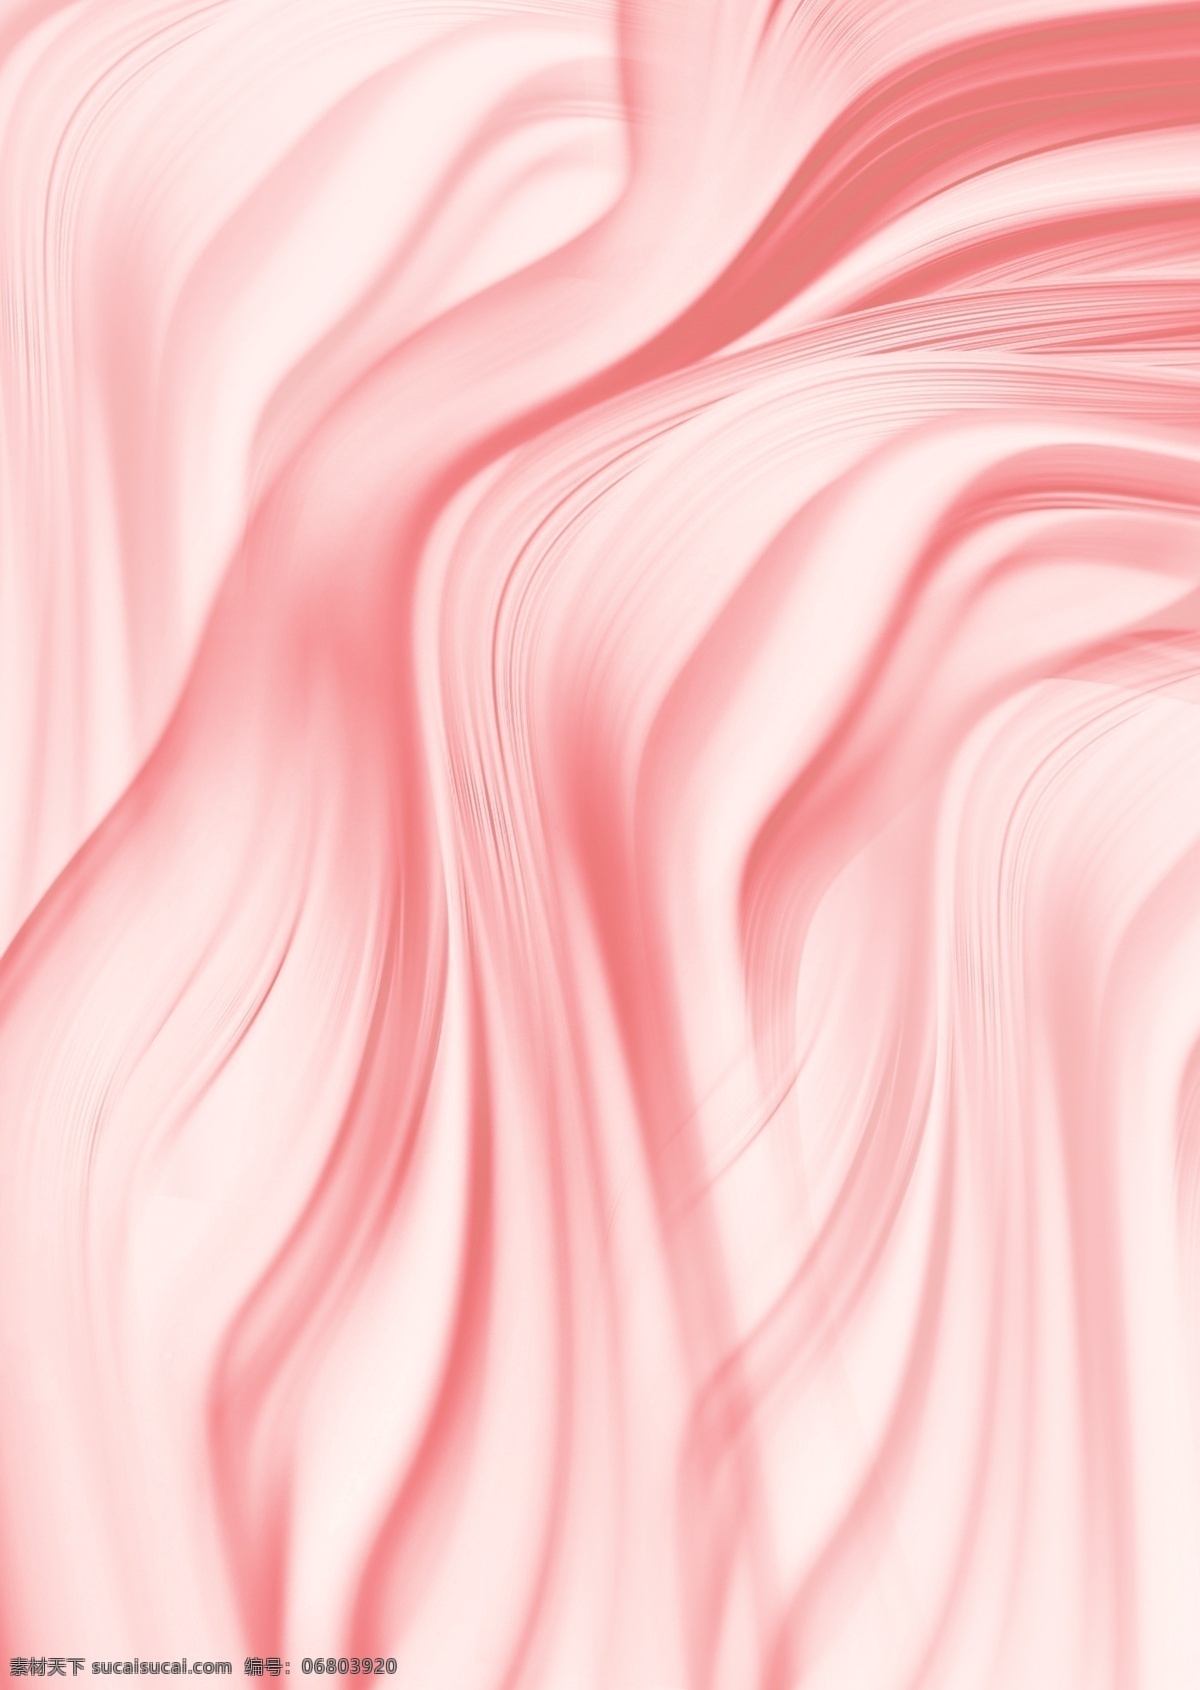 粉色纹理背景 粉色 纹理 背景 肌肤 元素 合成图 分层 护肤 红色 条纹 曲线